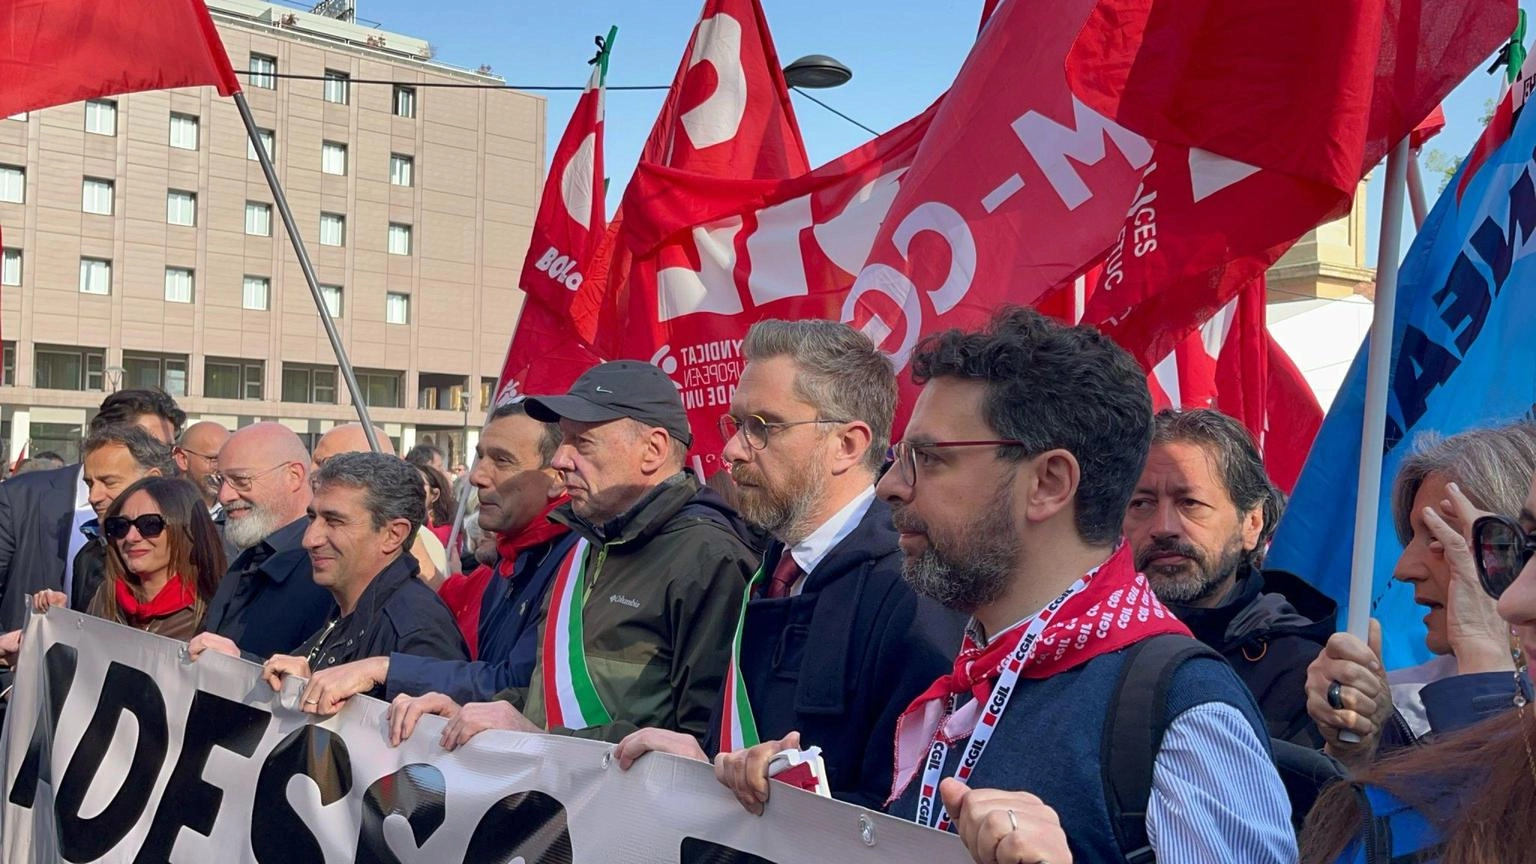 Strage di Suviana, corteo di protesta a Bologna. Lepore: "Enel e le istituzioni forniscano tutte le informazioni"